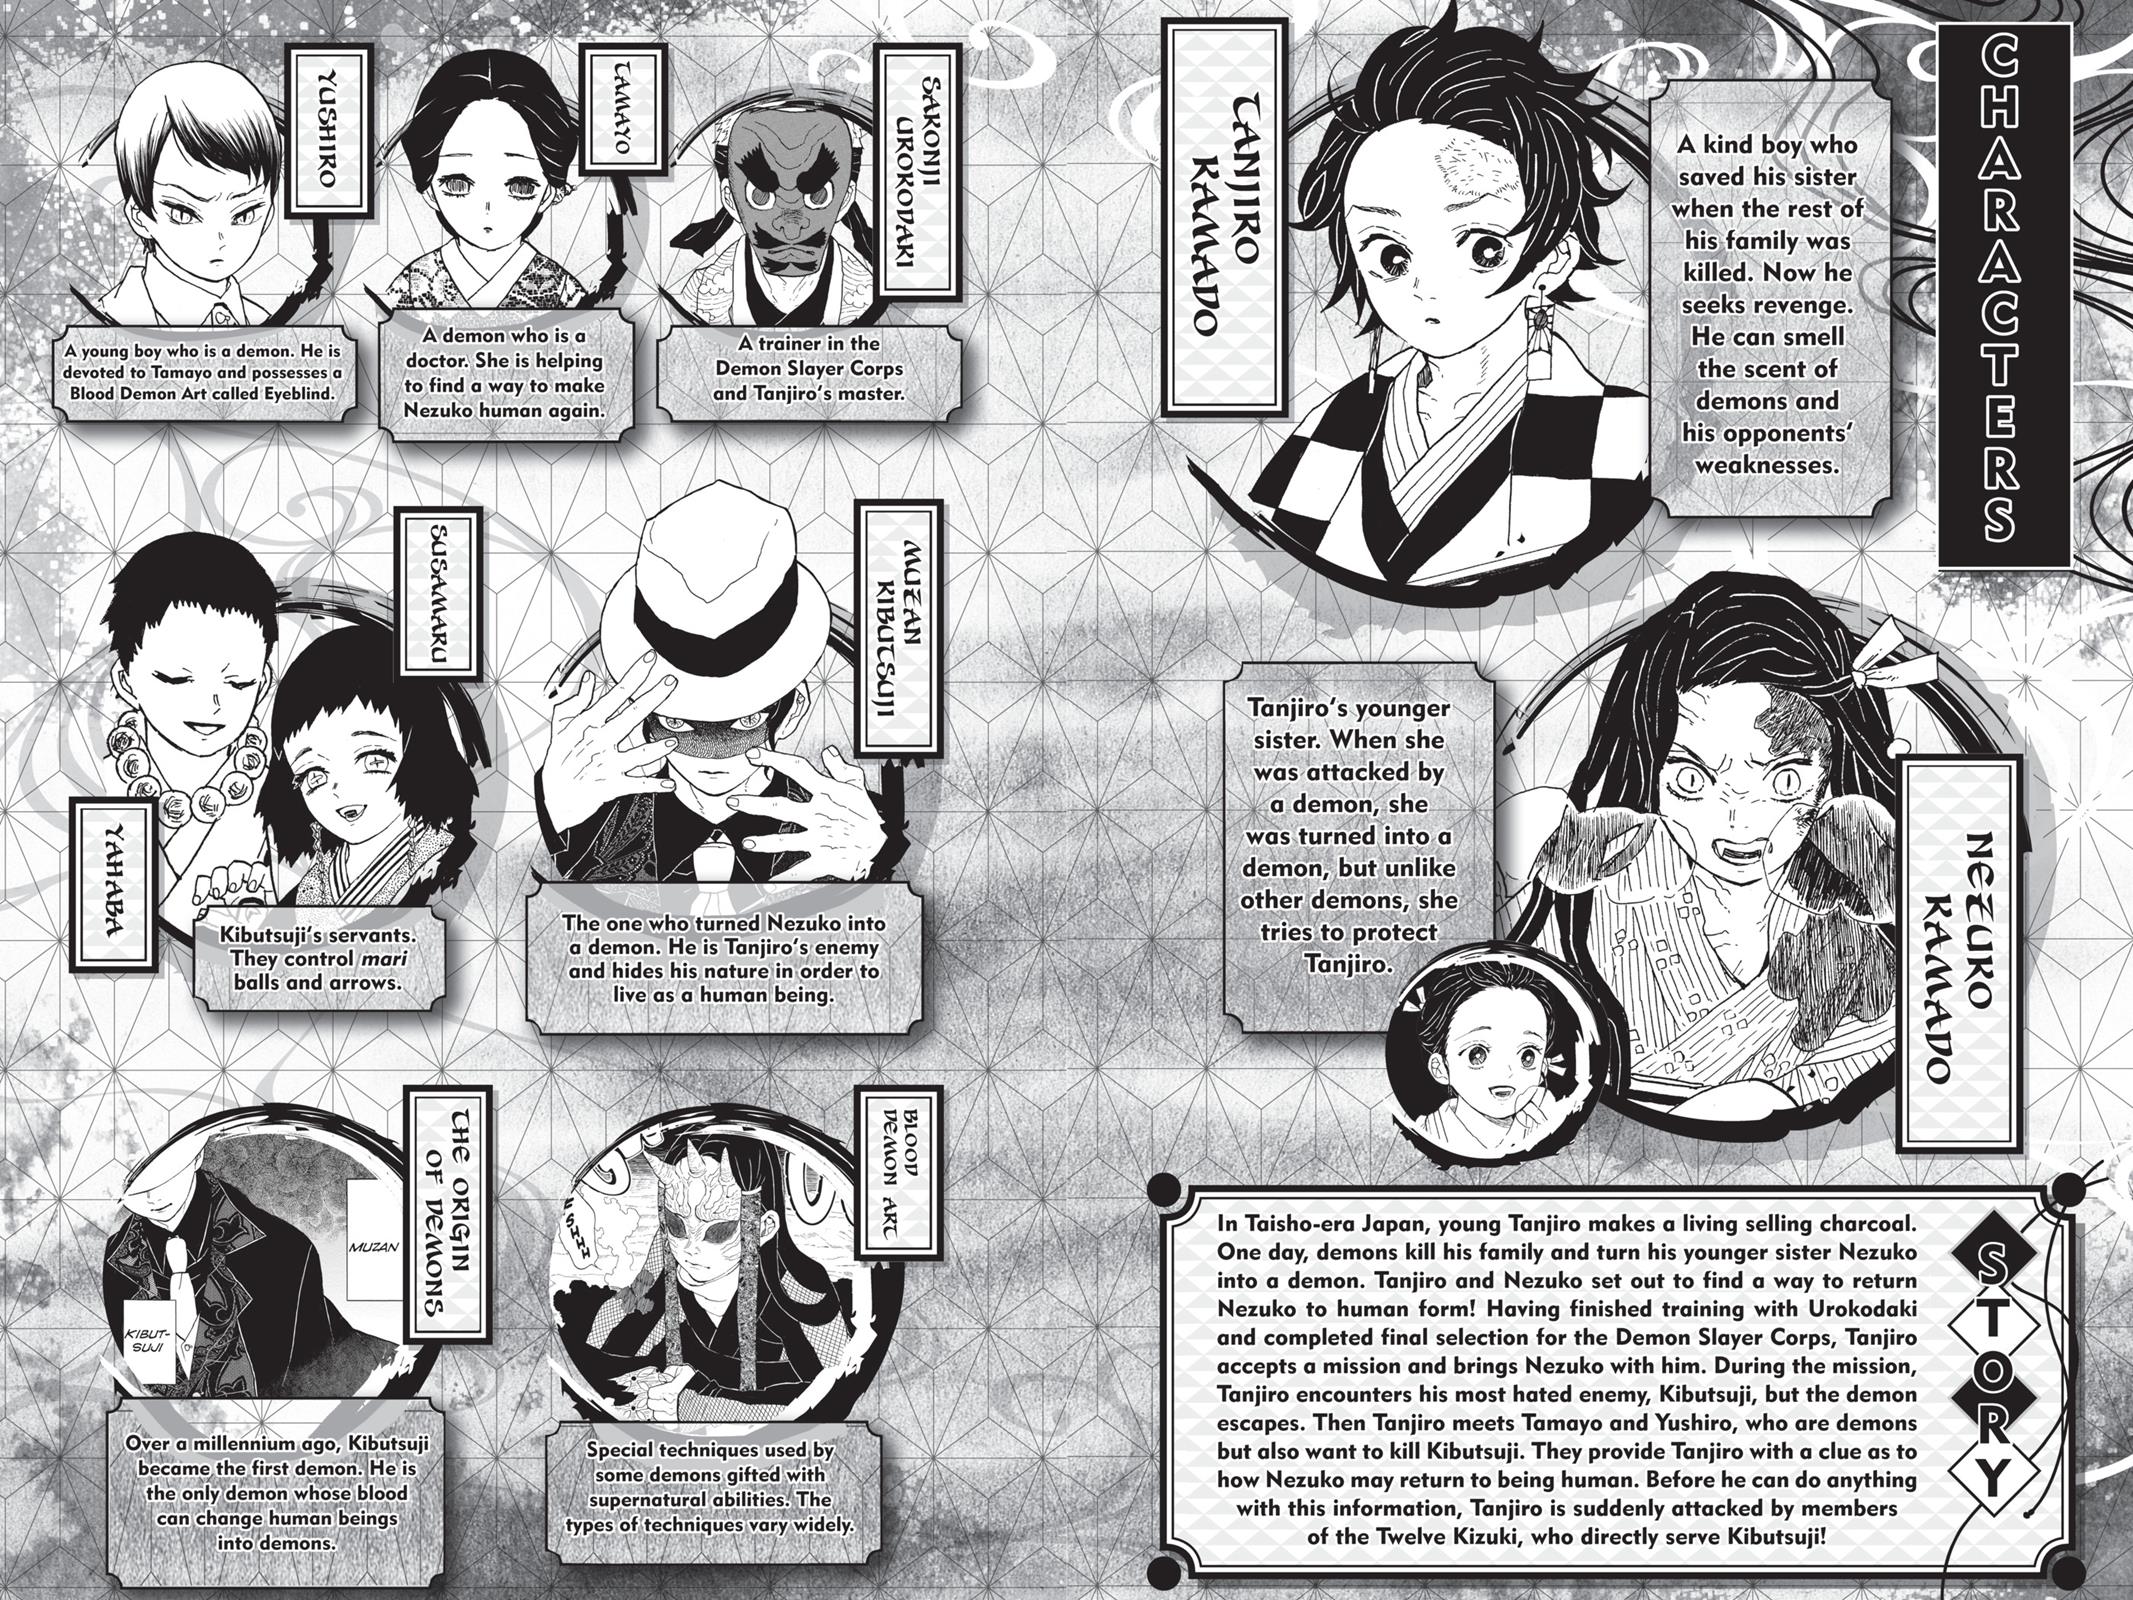 Demon Slayer Manga Manga Chapter - 17 - image 5